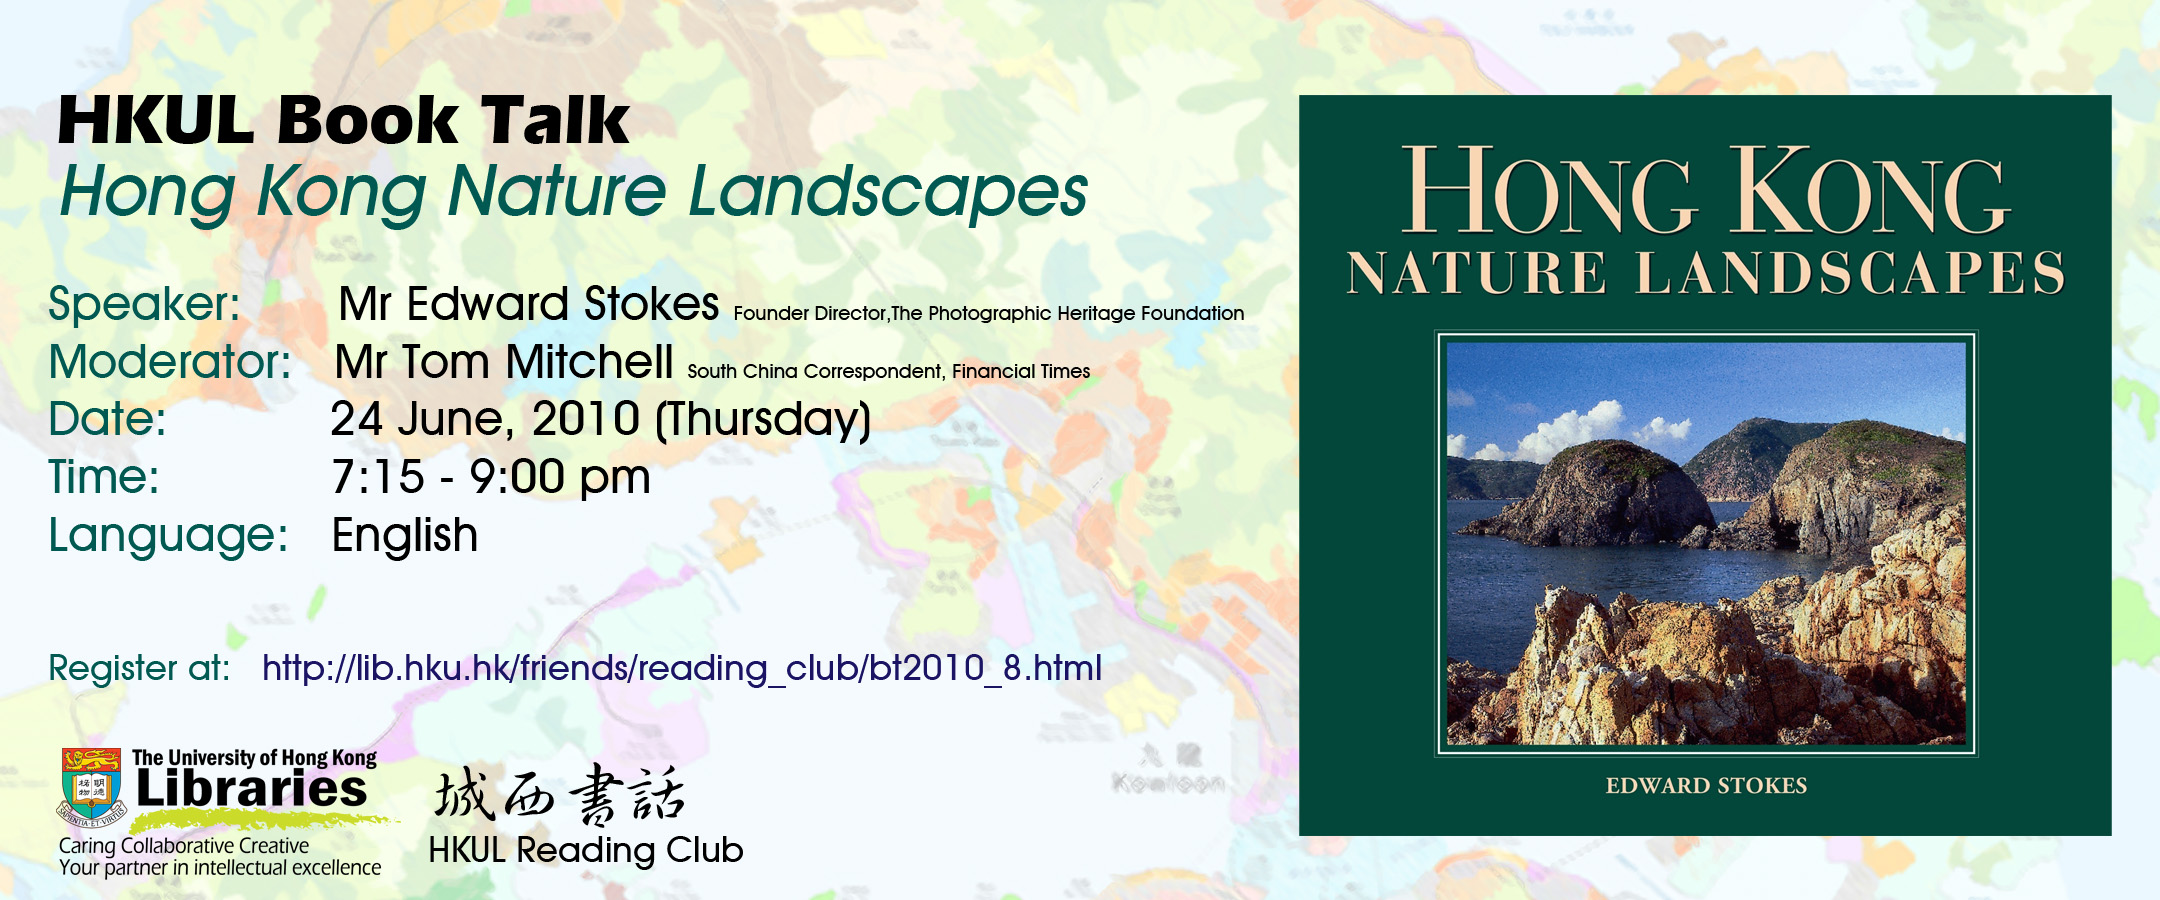 HKUL Book Talk- Hong Kong Nature Landscapes